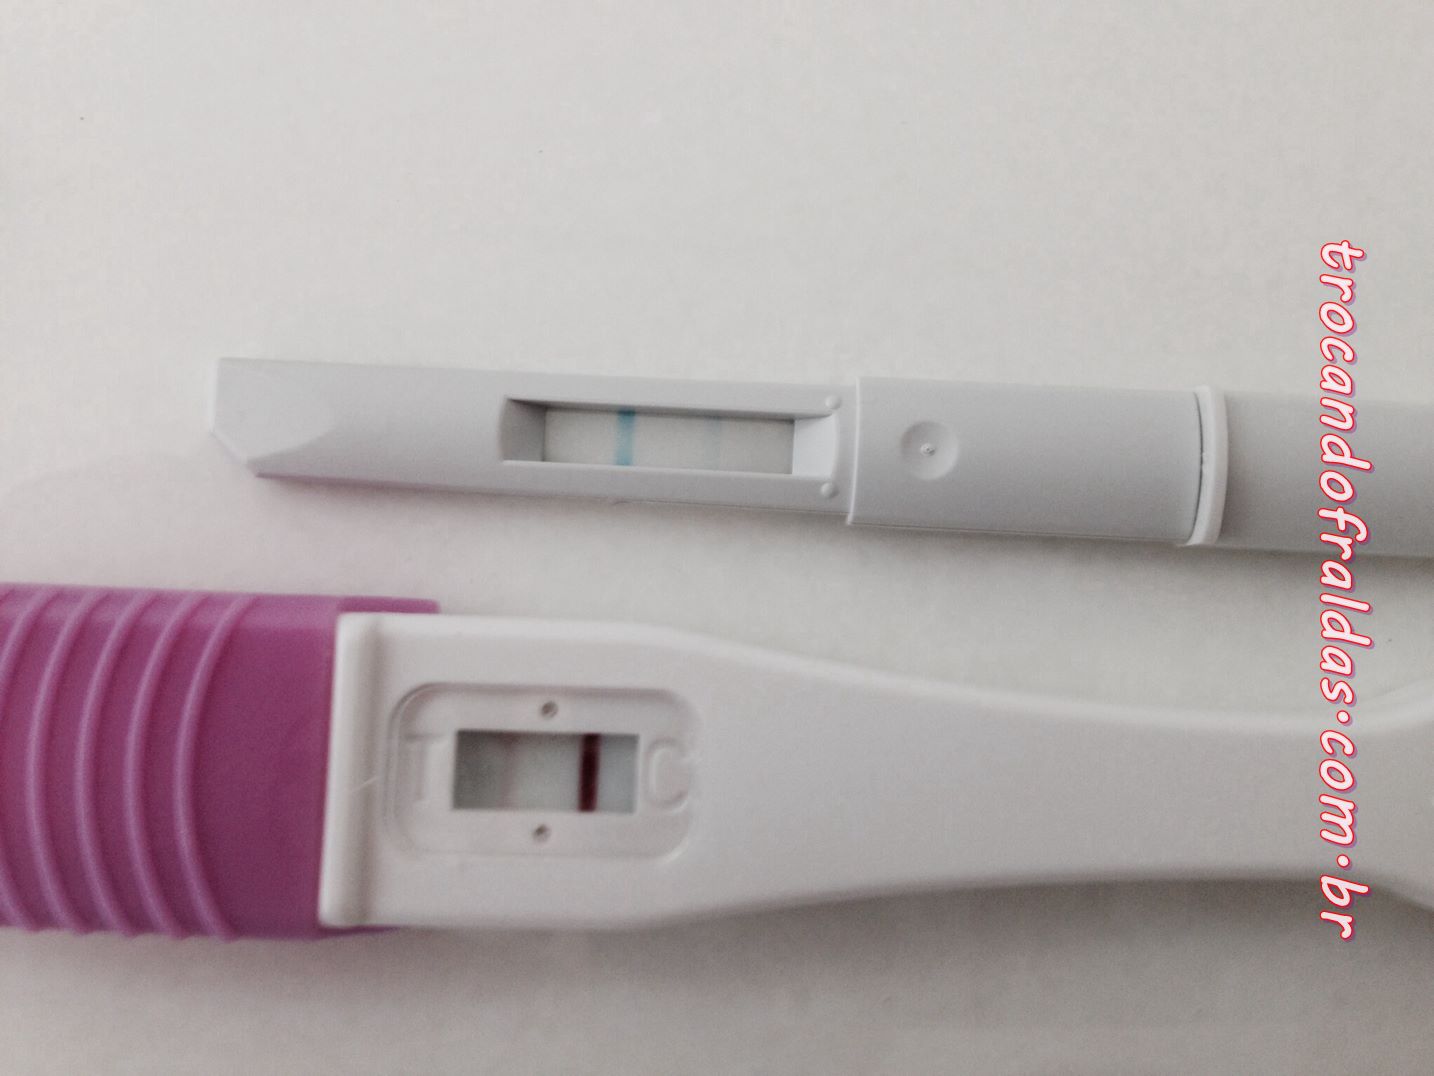 Síntomas de embarazo y test ovulación positivo?